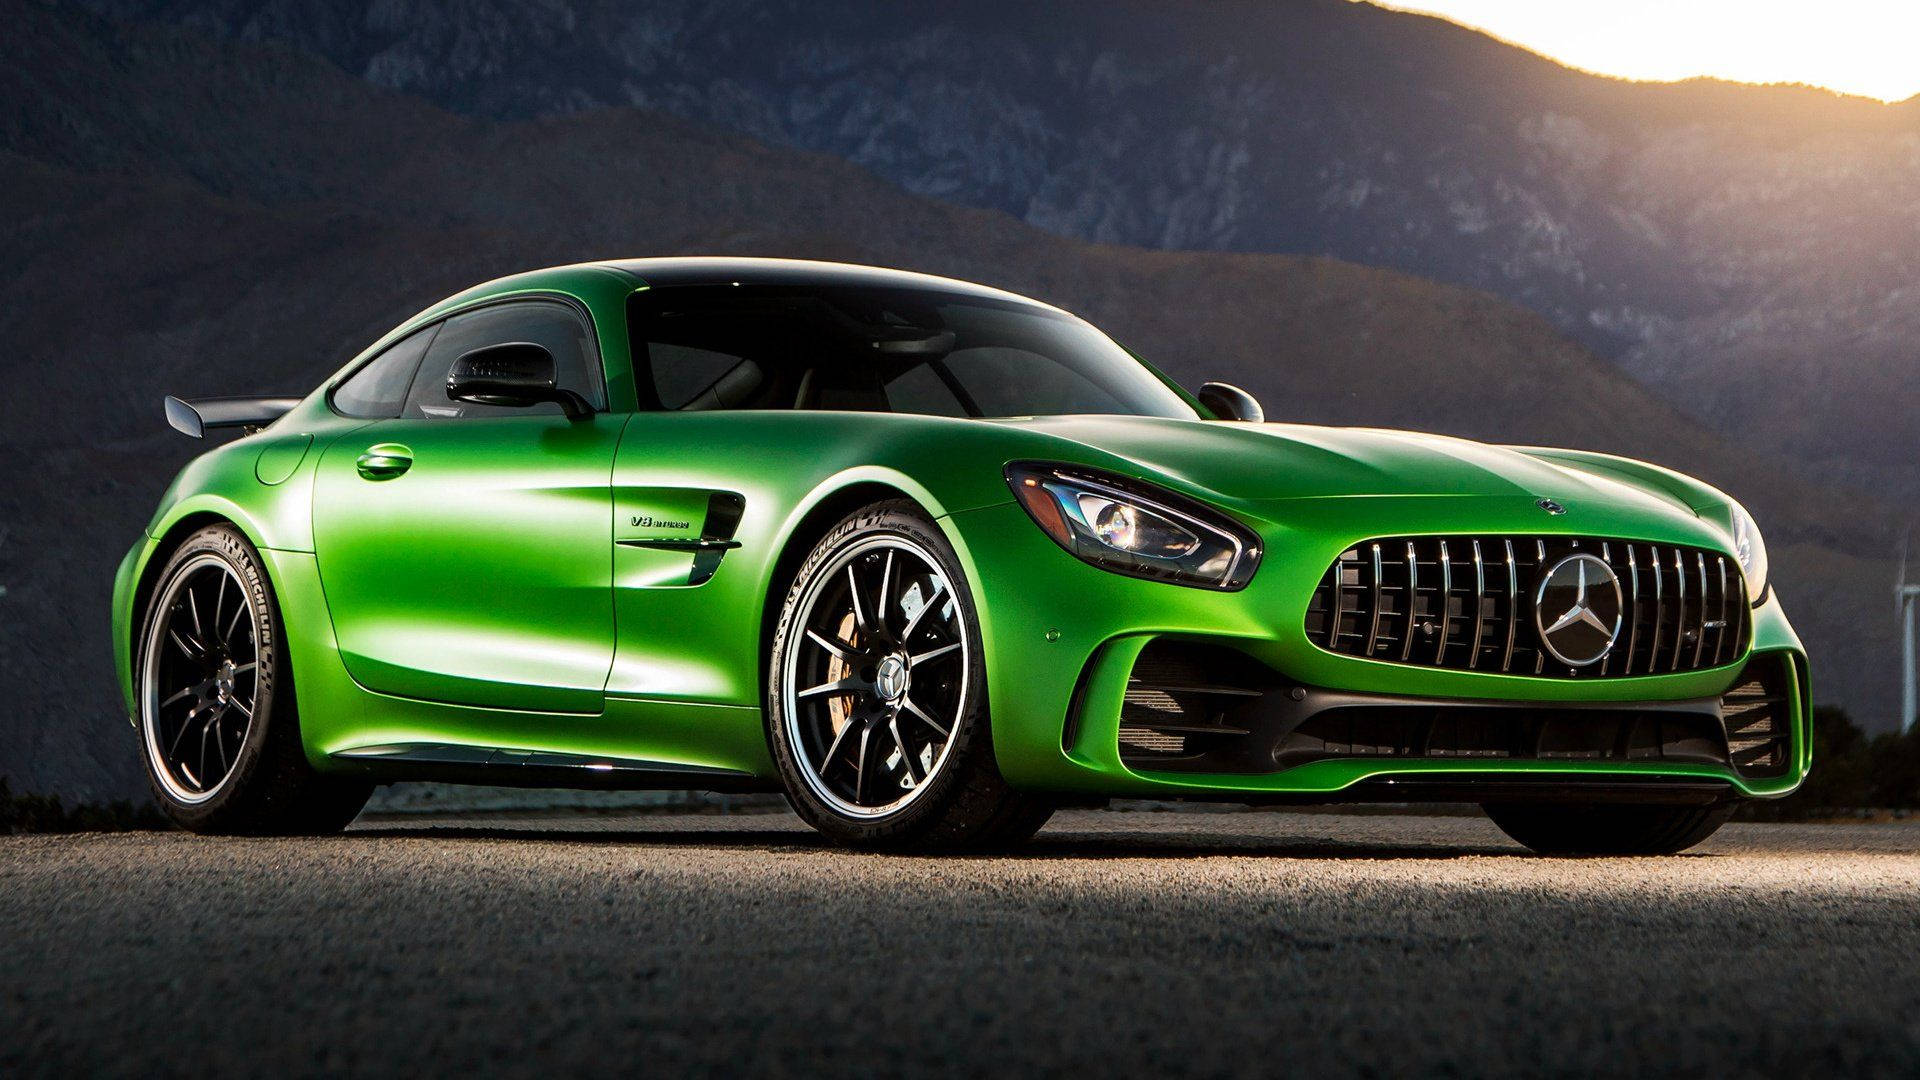 High-class Bright Green Mercedes Amg Gtr Wallpaper